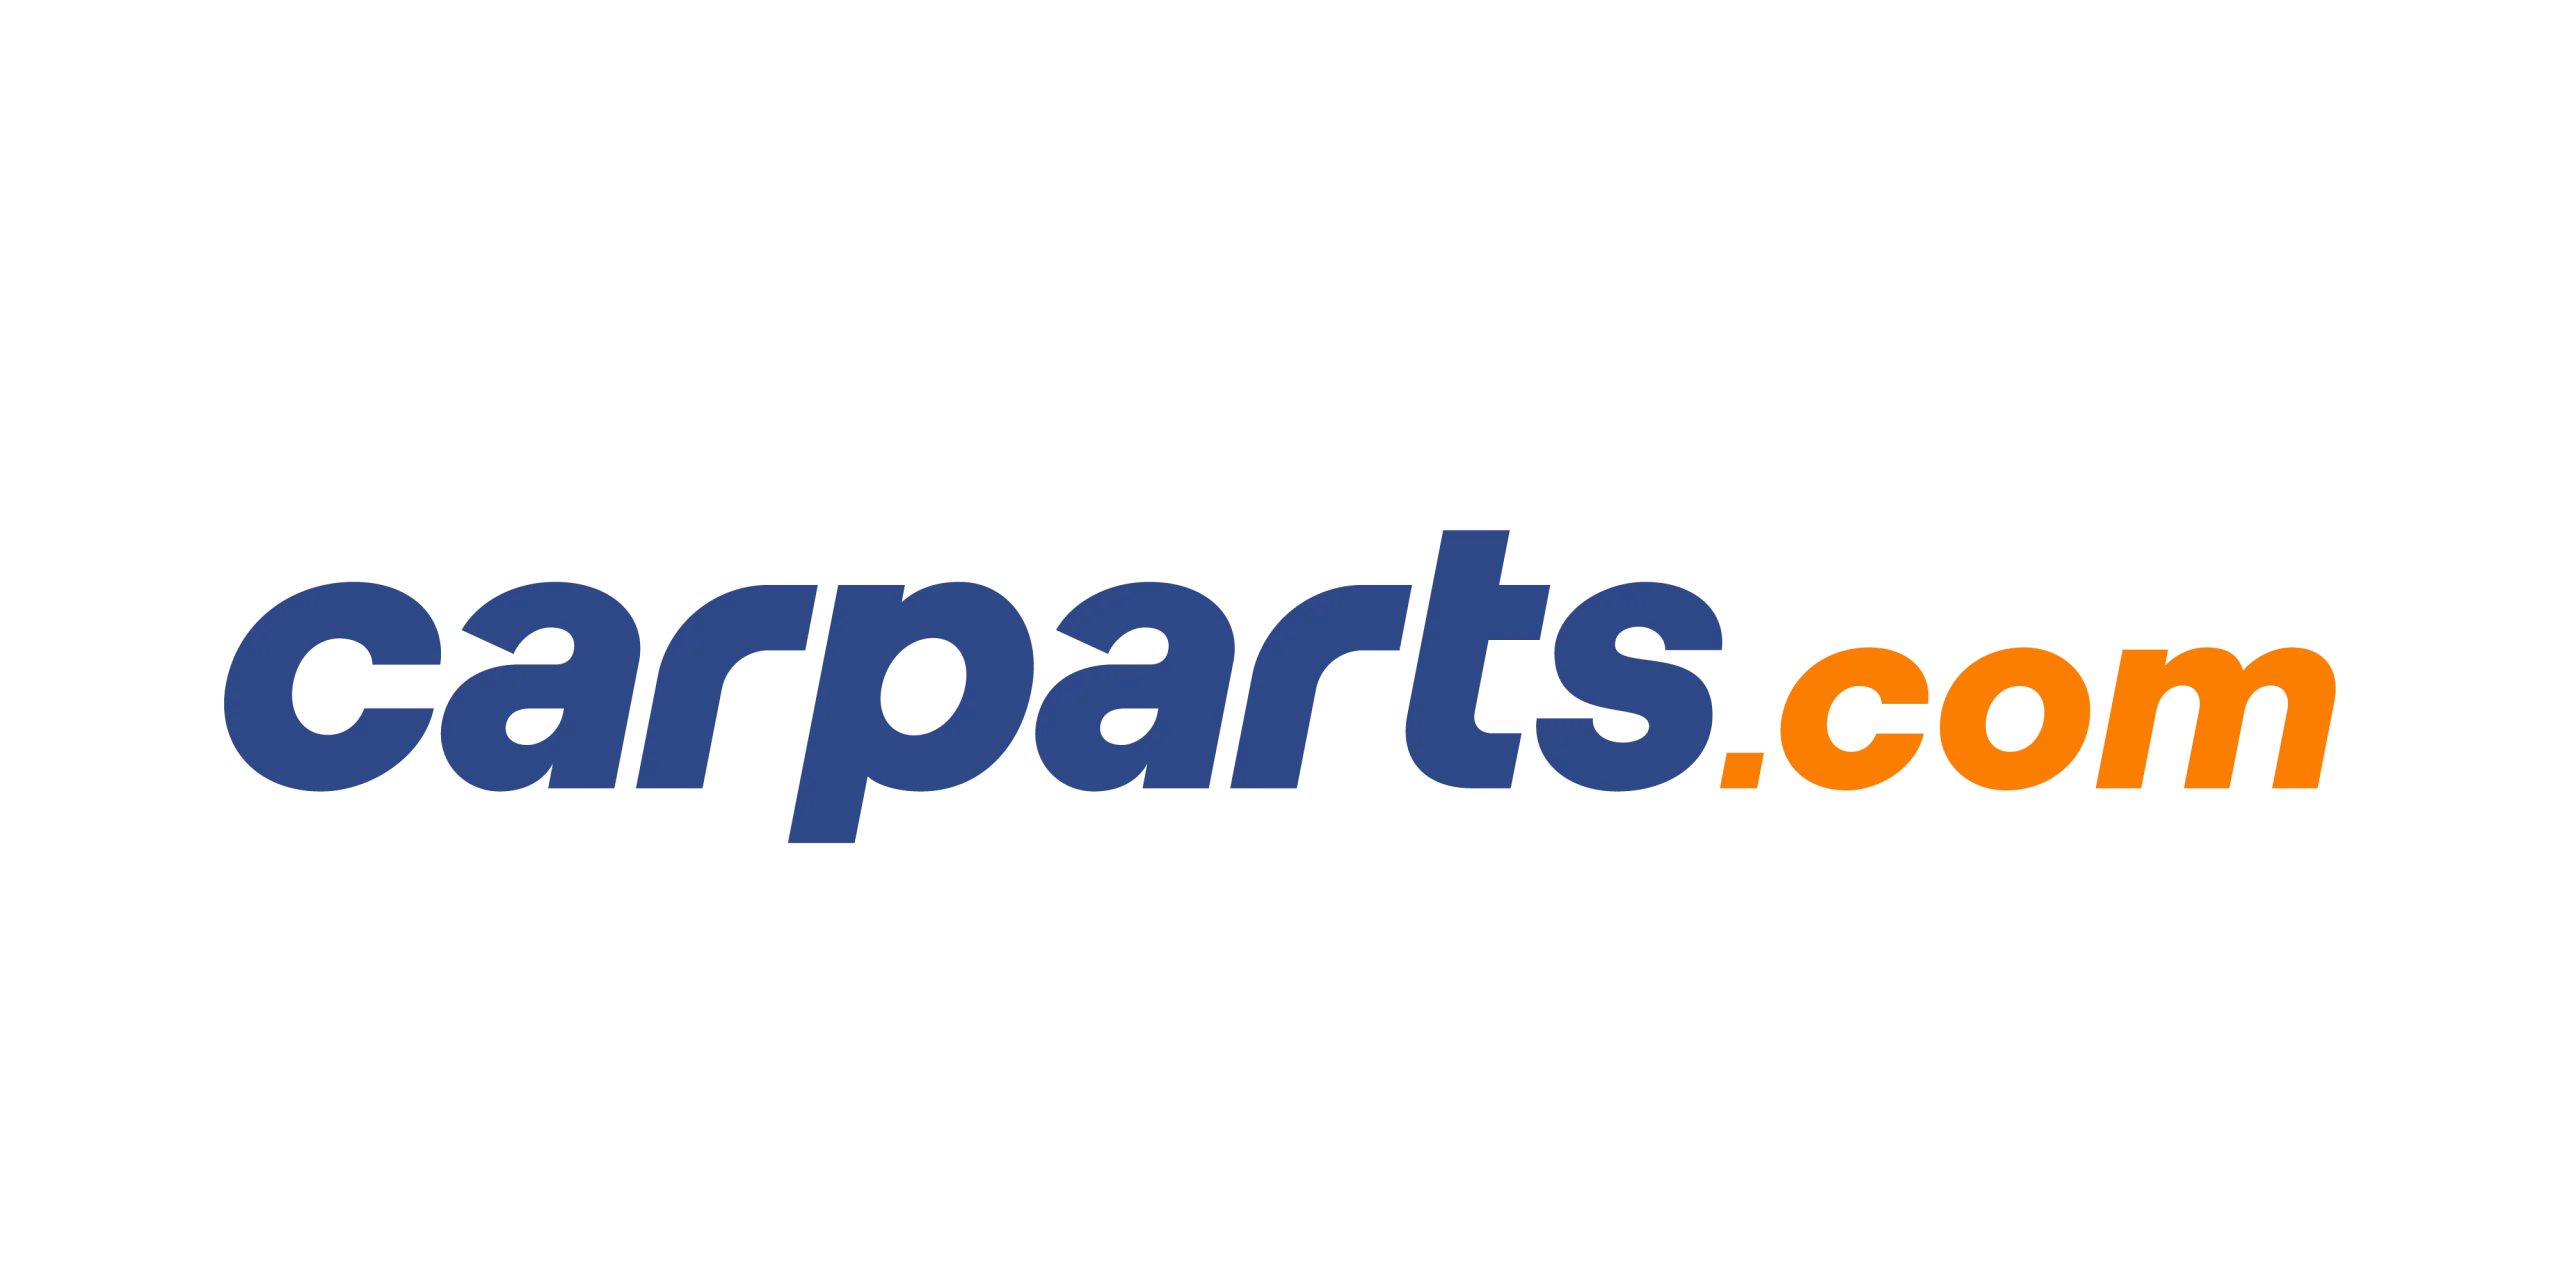 Carparts.com